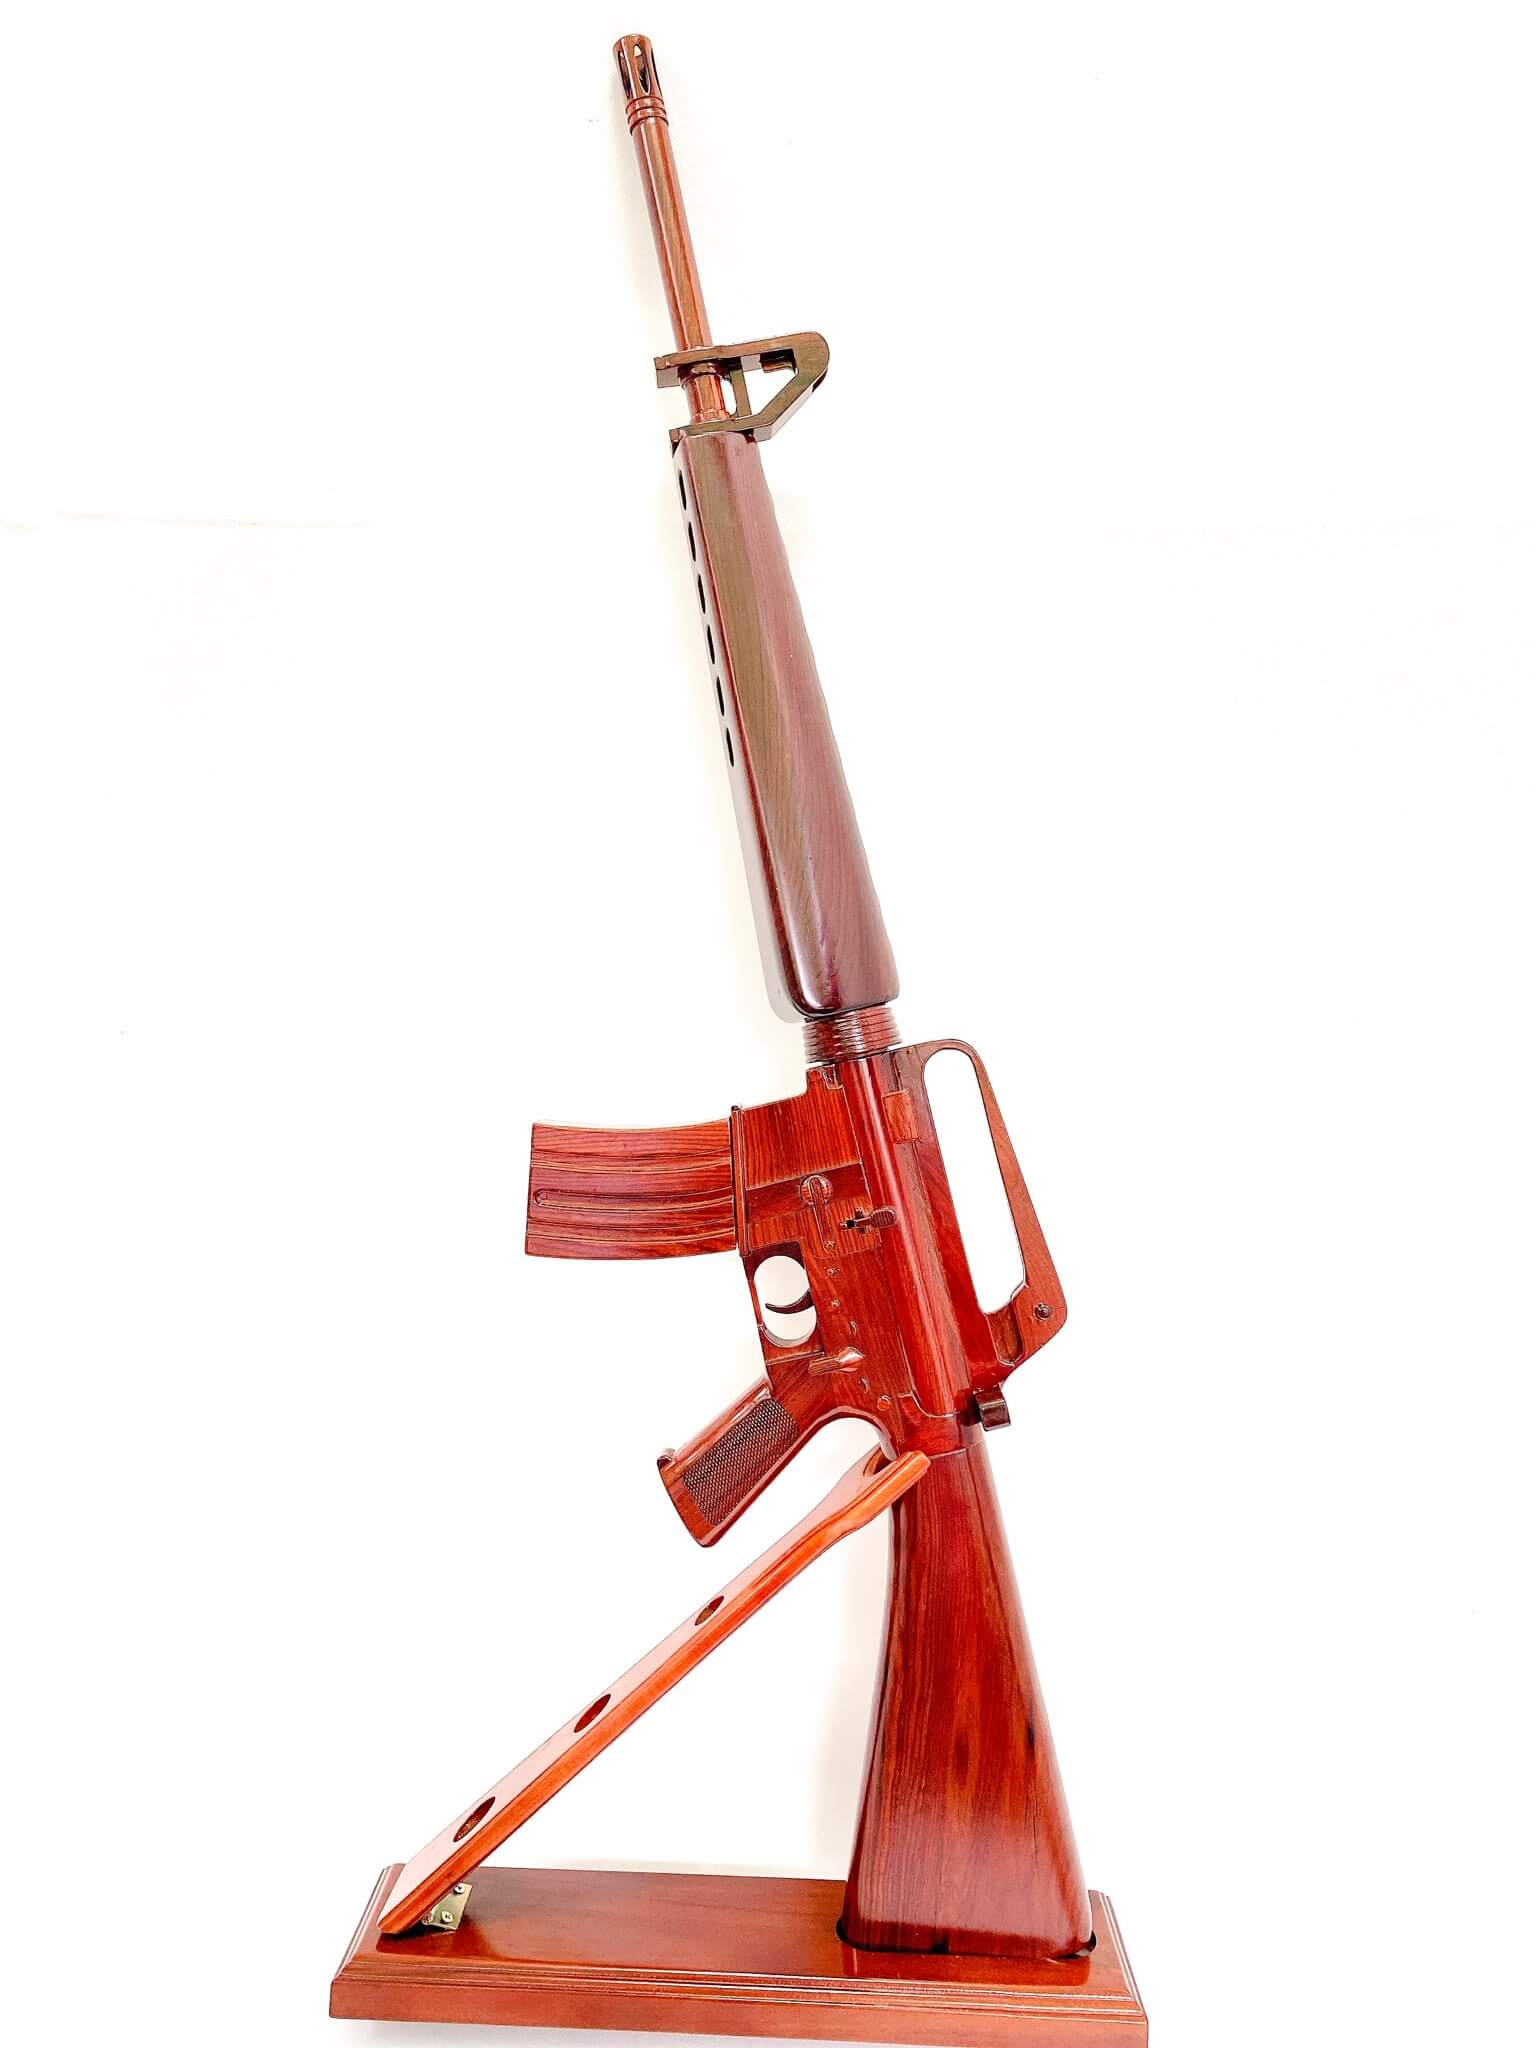 M-16 Guns